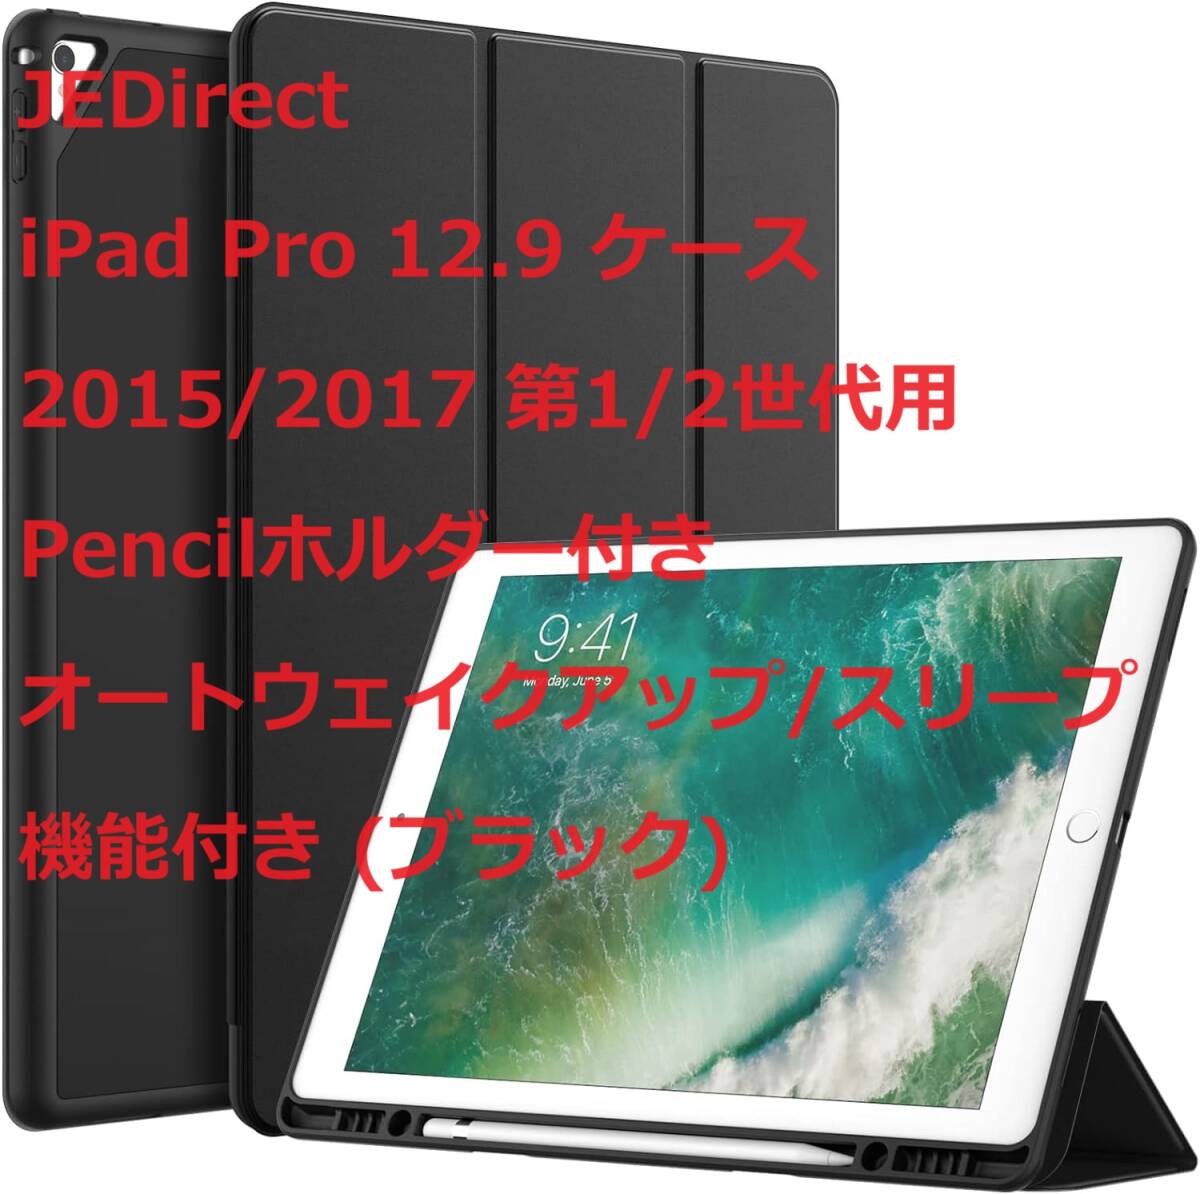 JEDirect iPad Pro 12.9 ケース 2015/2017 第1/2世代用Pencilホルダー付き オートウェイクアップ/スリープ機能付き (ブラック)の画像1